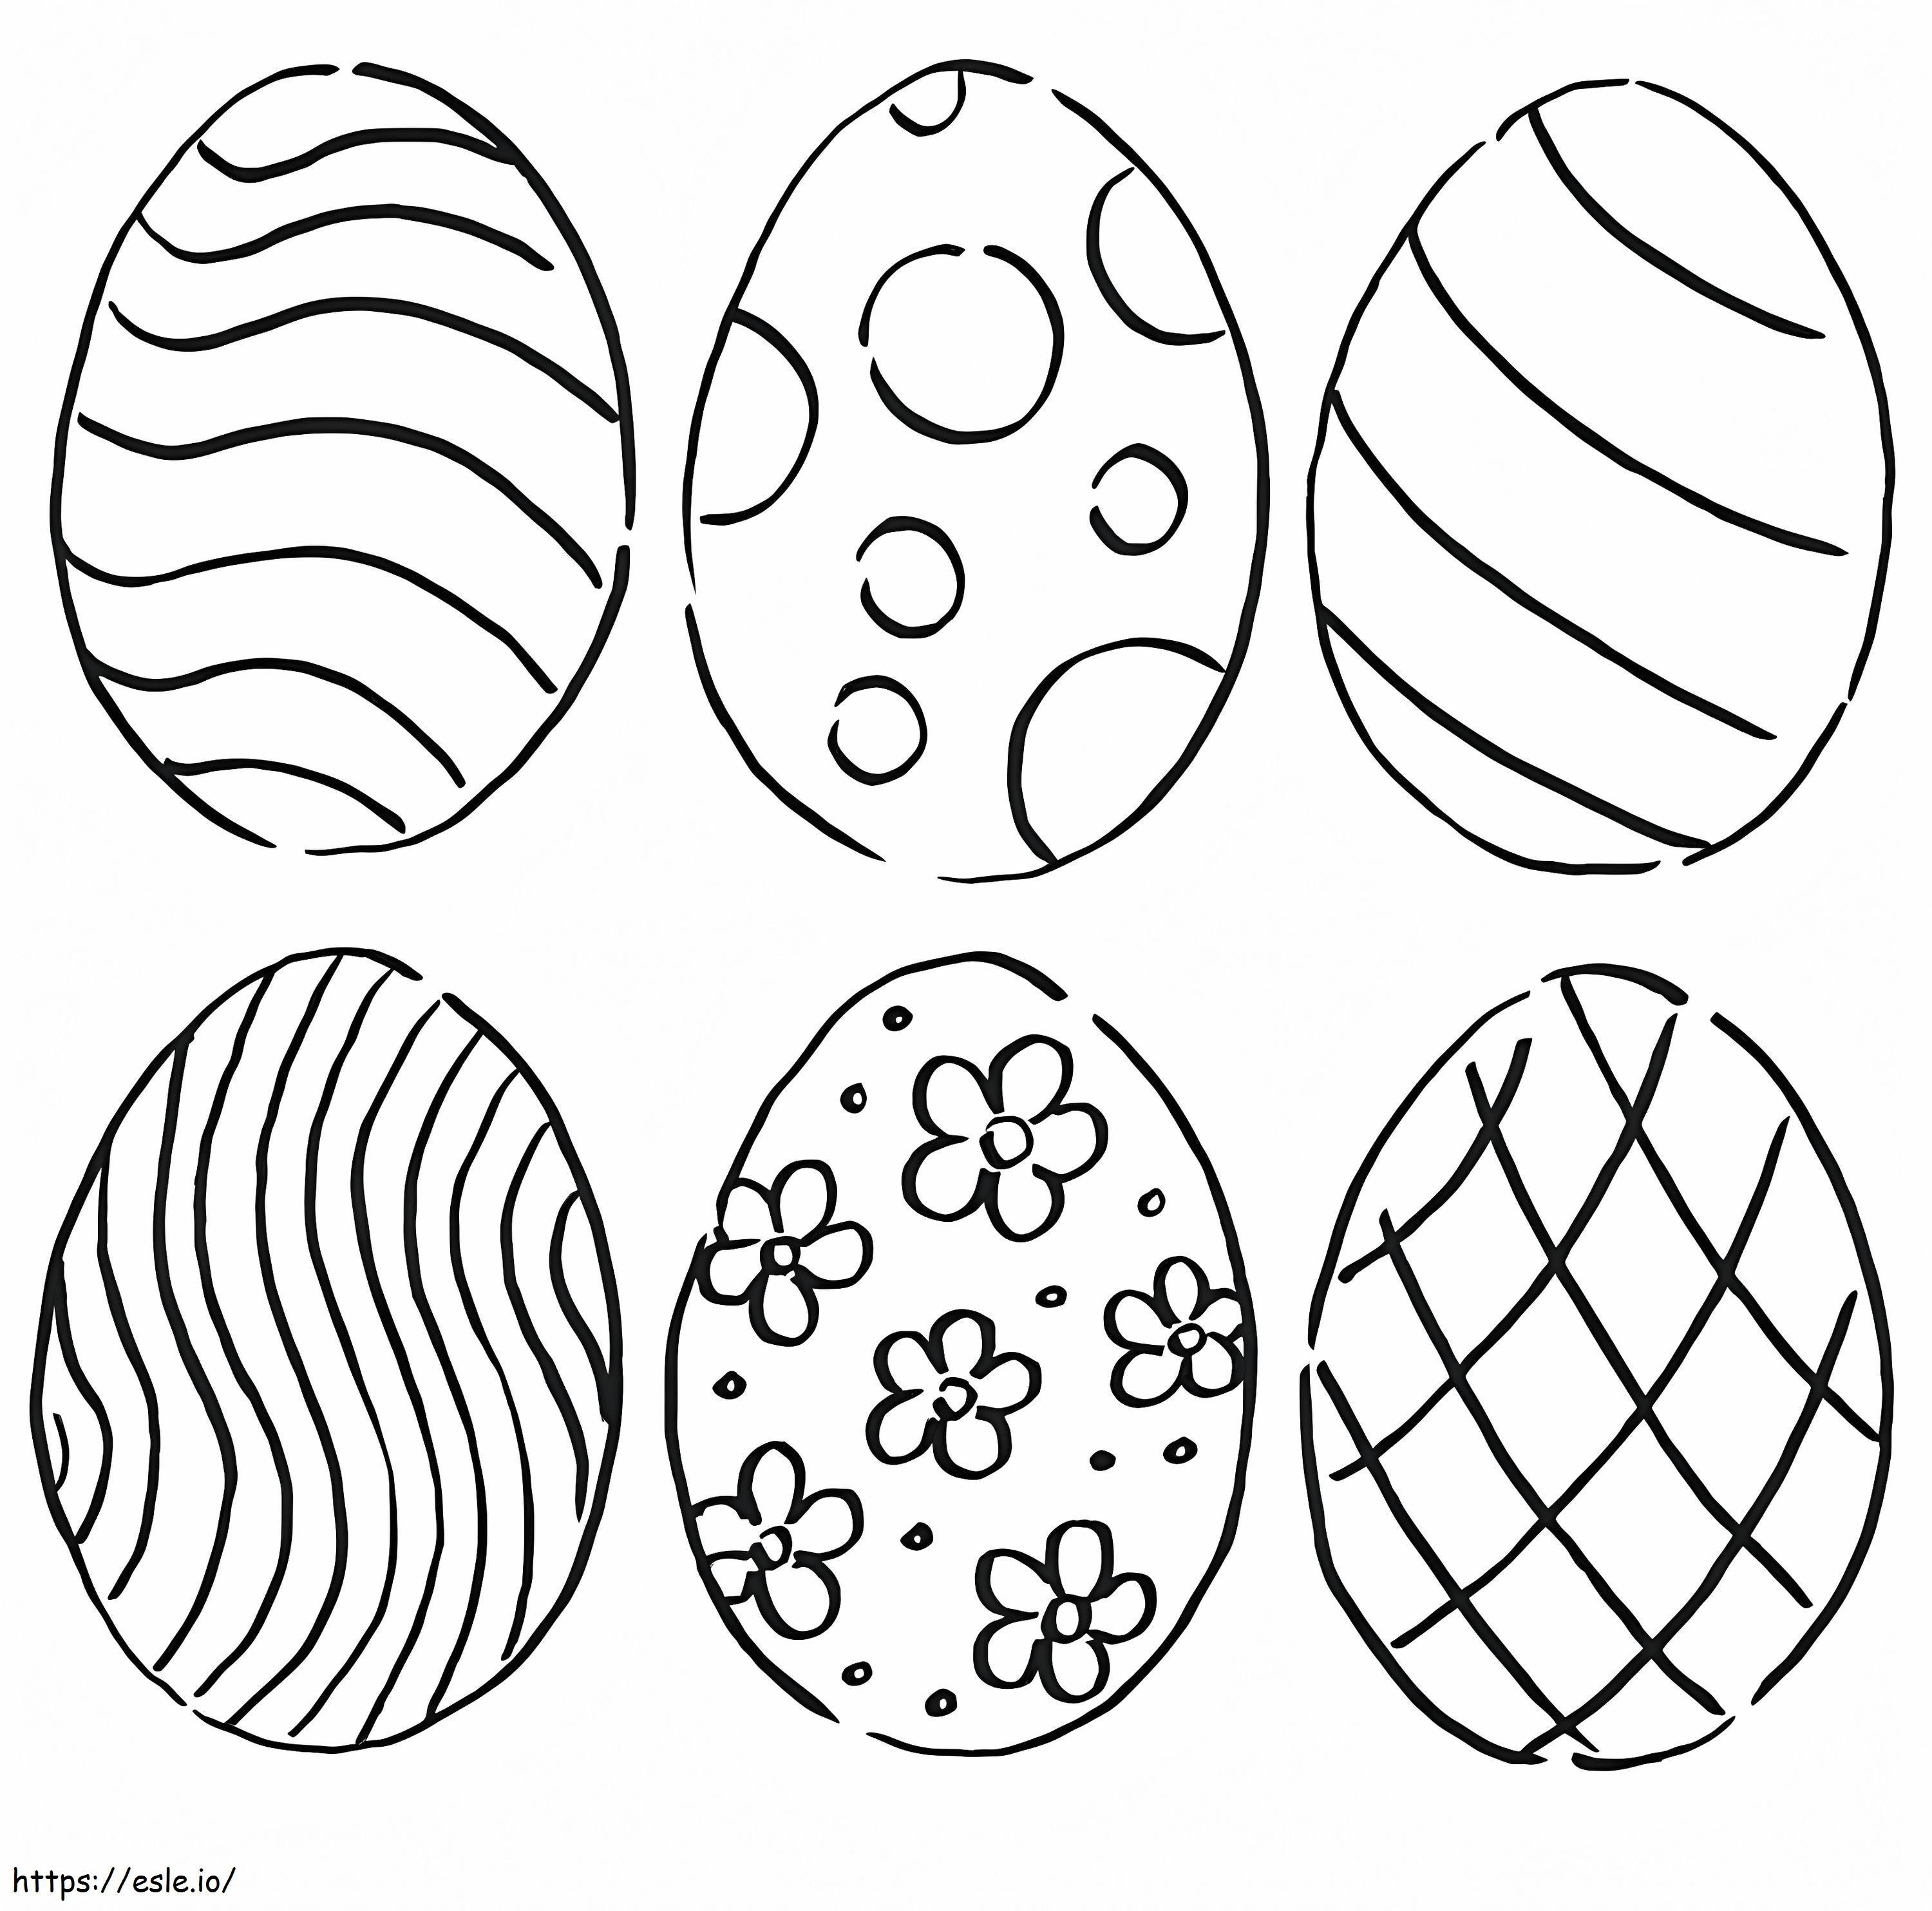 Coloriage Oeufs de Pâques 6 à imprimer dessin